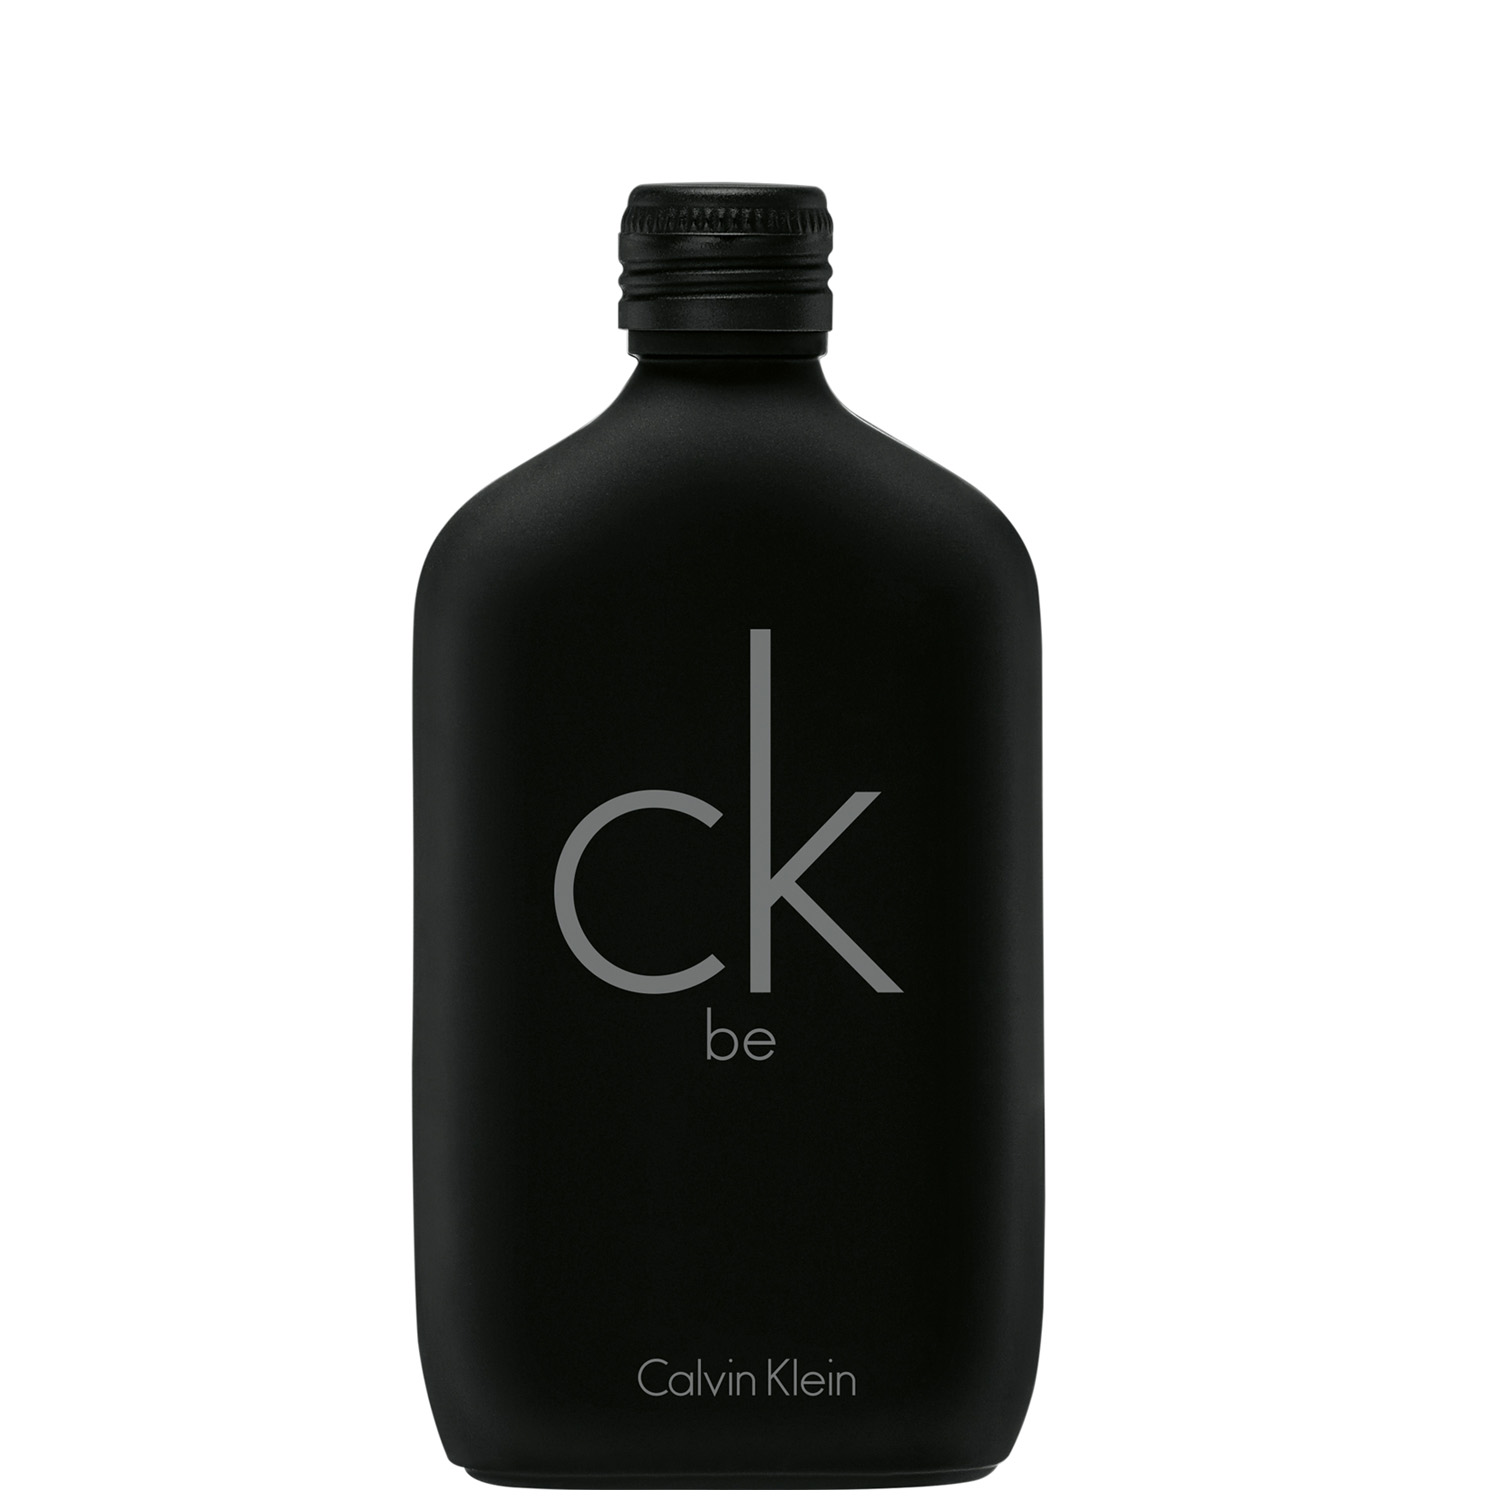 Calvin Klein CK BE Eau de Toilette 50ml